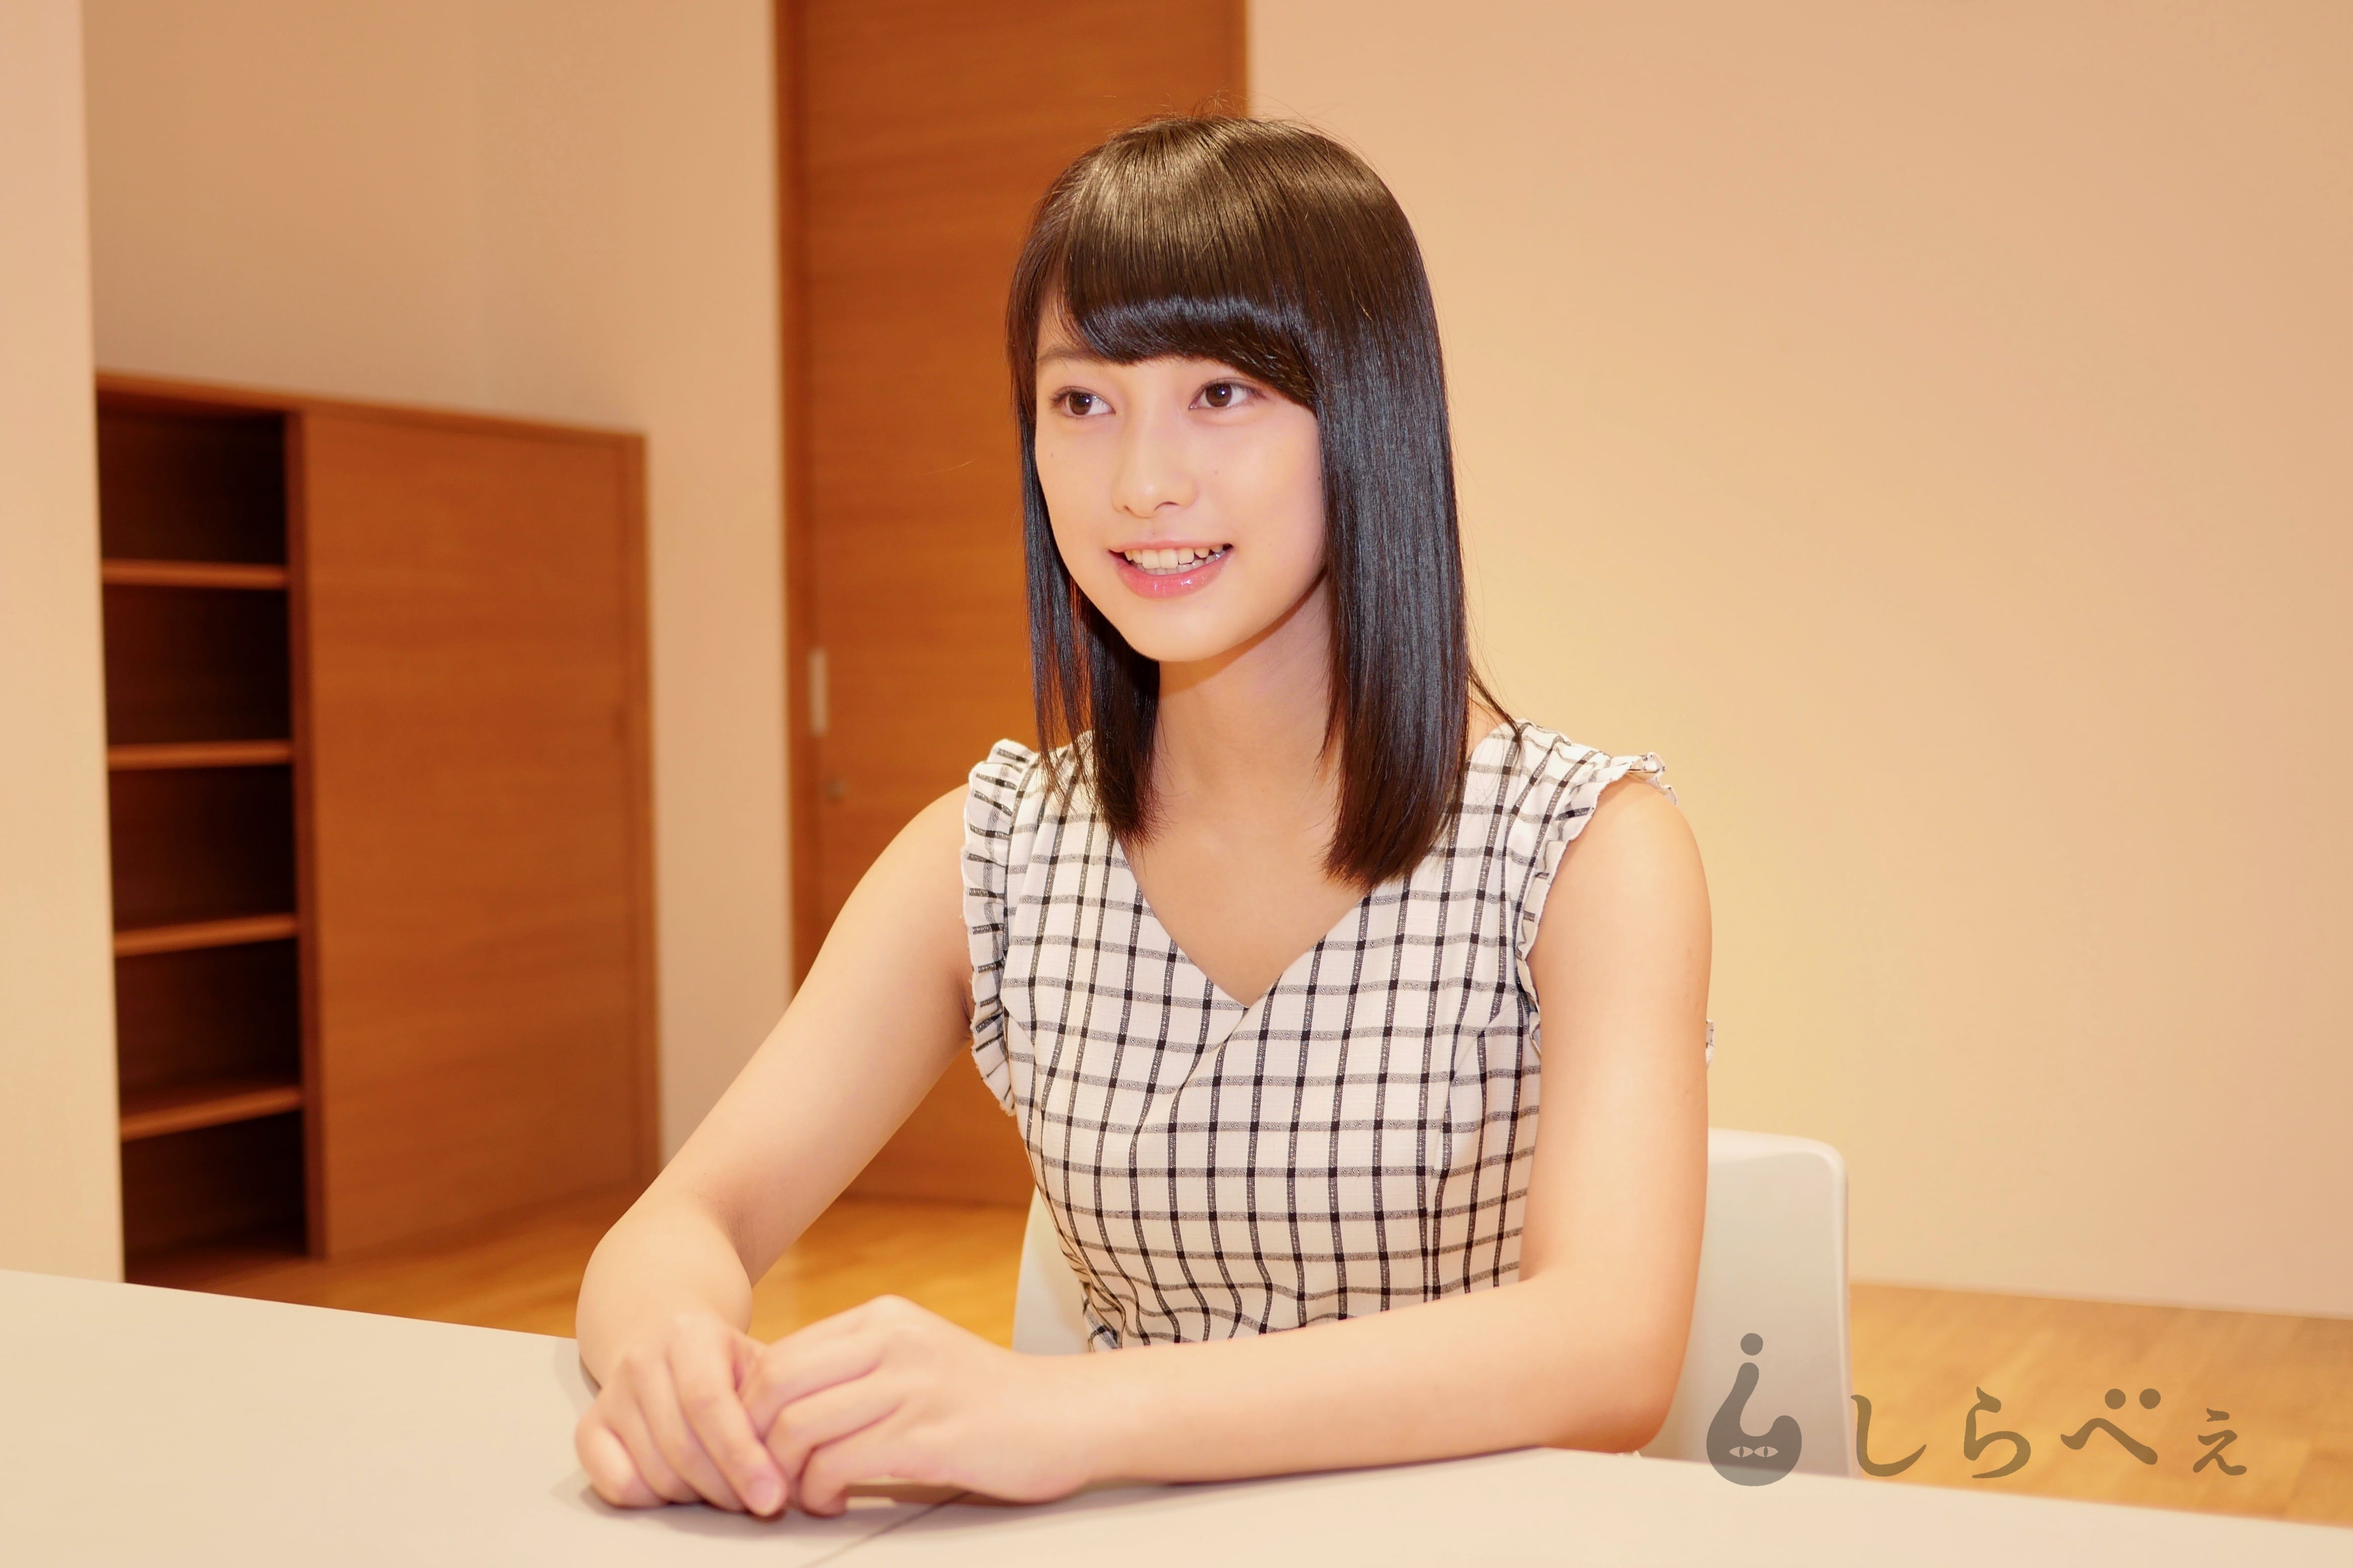 国民的美少女 玉田志織が初写真集を発売 負けず嫌いで初々しい16歳の素顔に迫る Sirabeetamadashiori1